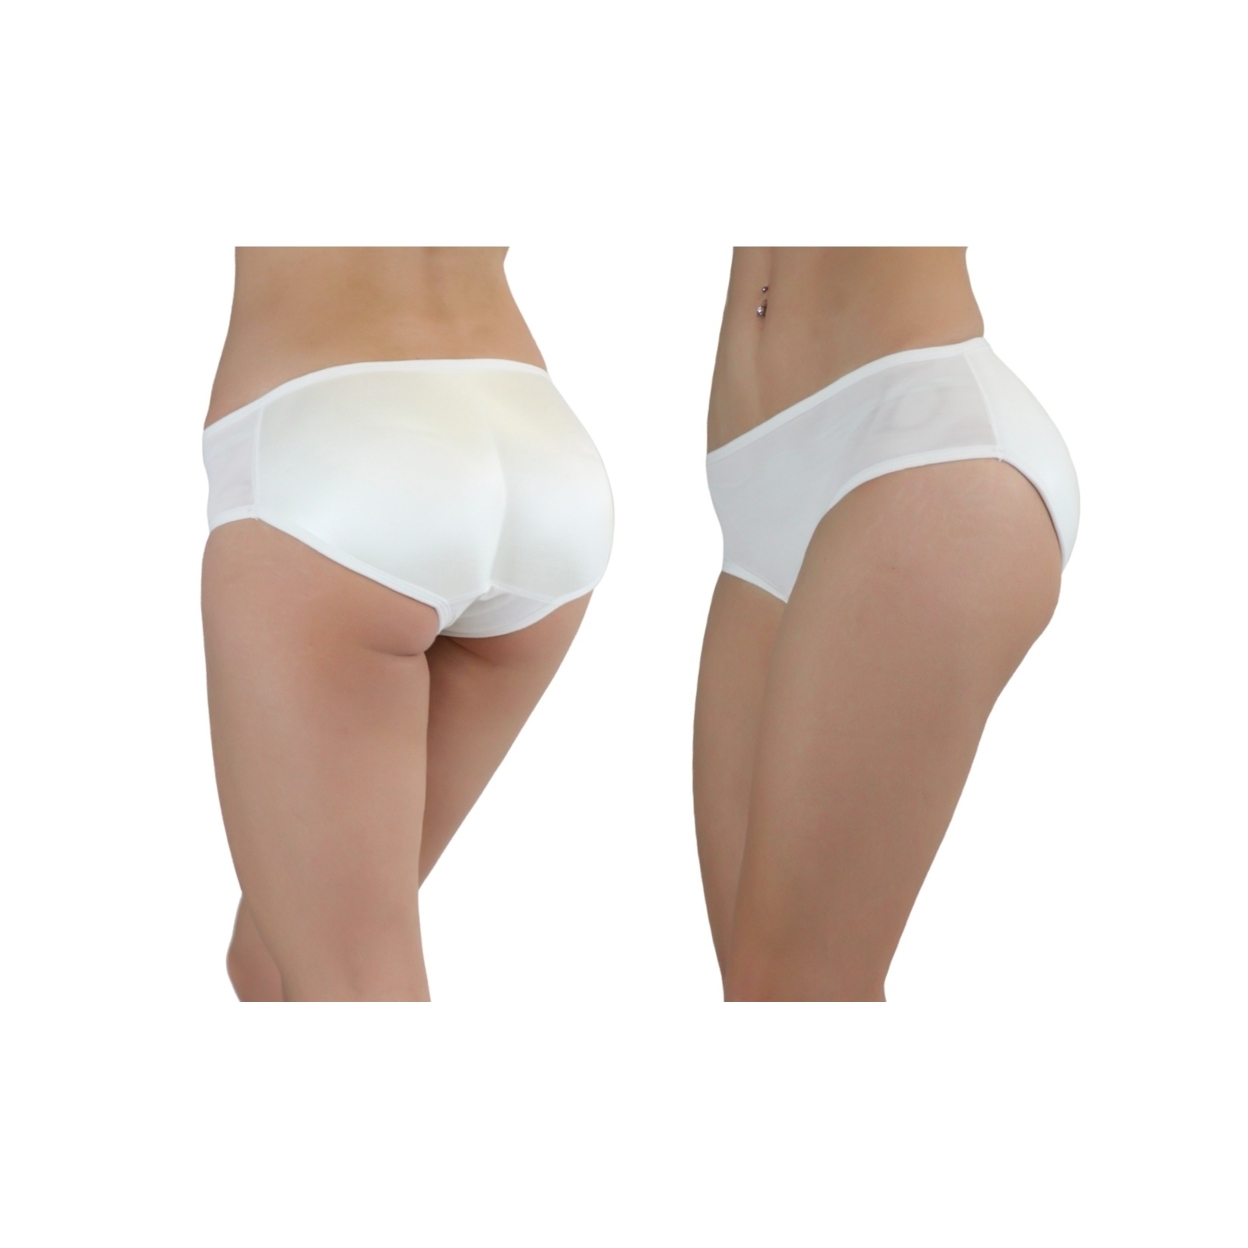 Women's Low-Rise Padded Panties - White, M